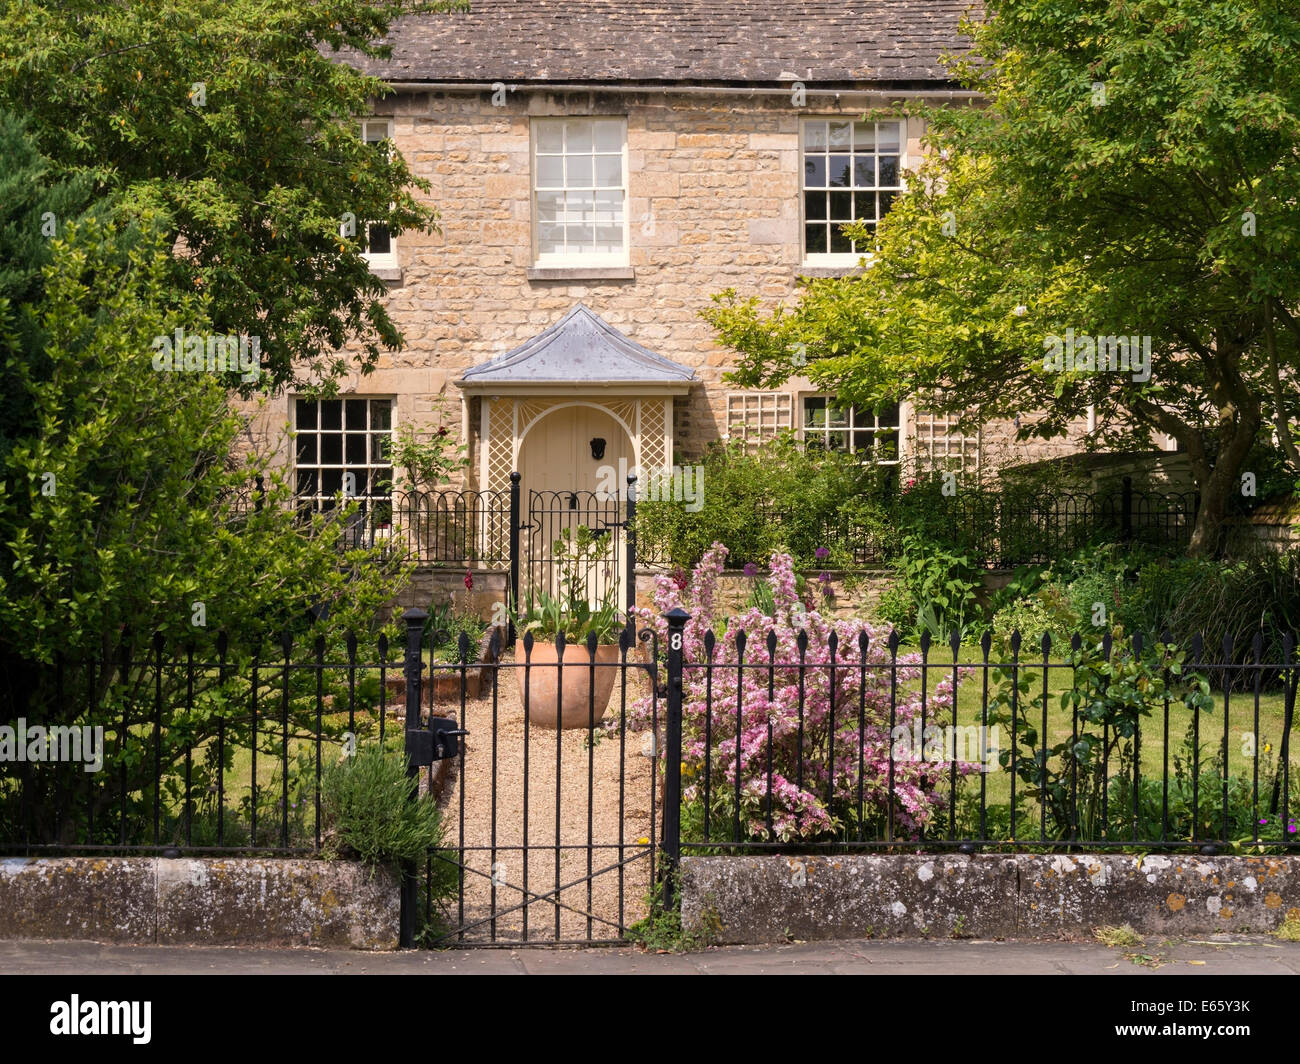 Atractivo viejo stone town house cottage con bonito porche, jardín y rejas metálicas, baño fila,Stamford, Lincolnshire, Inglaterra, Reino Unido Foto de stock